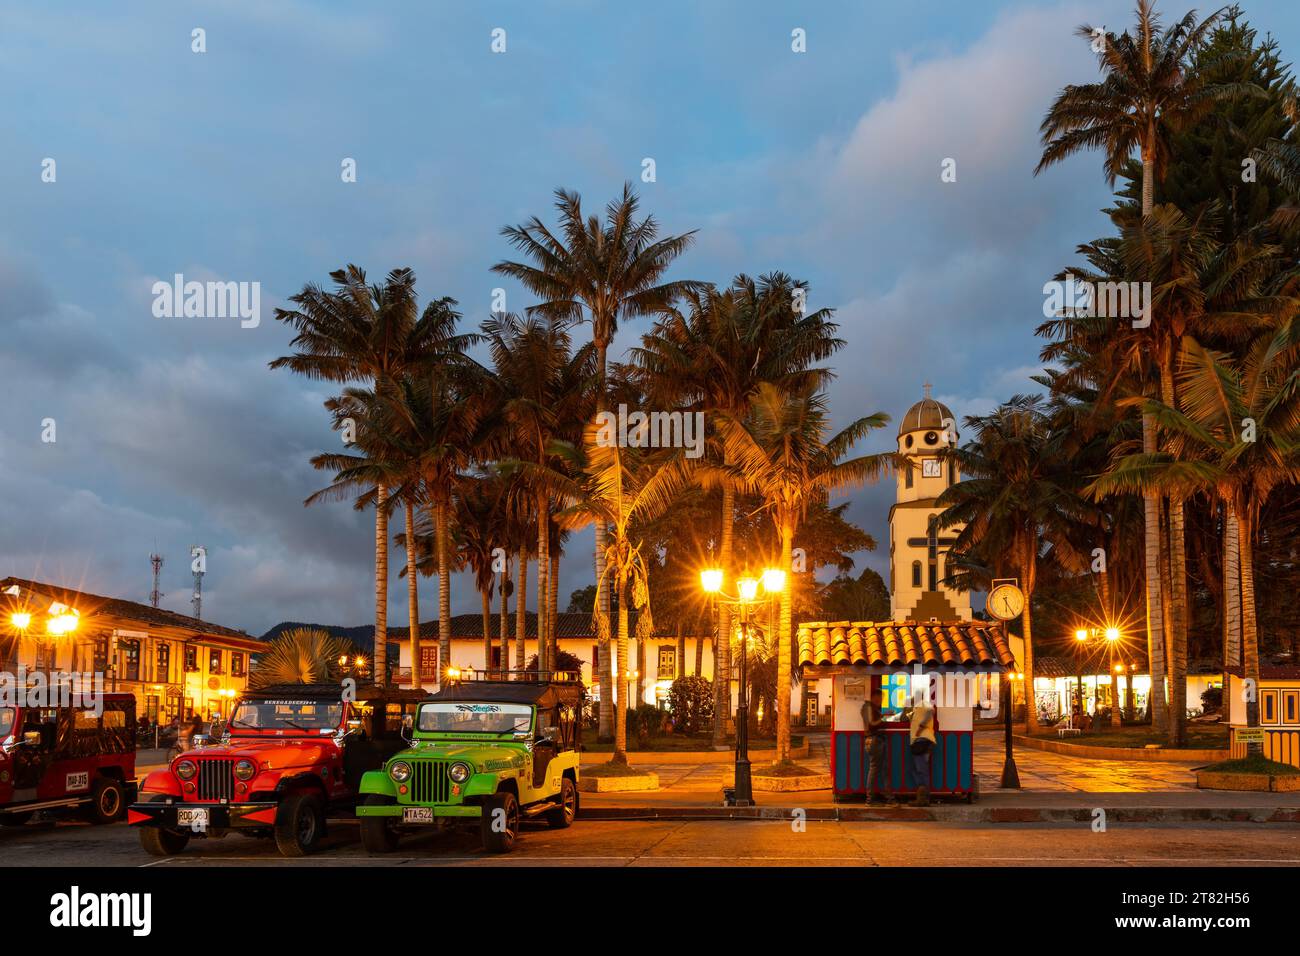 Église notre-Dame de Carmen, palmiers, véhicule hors route, heure bleue, Plaza de Bolivar Salento, Salento, Quindio, Colombie Banque D'Images